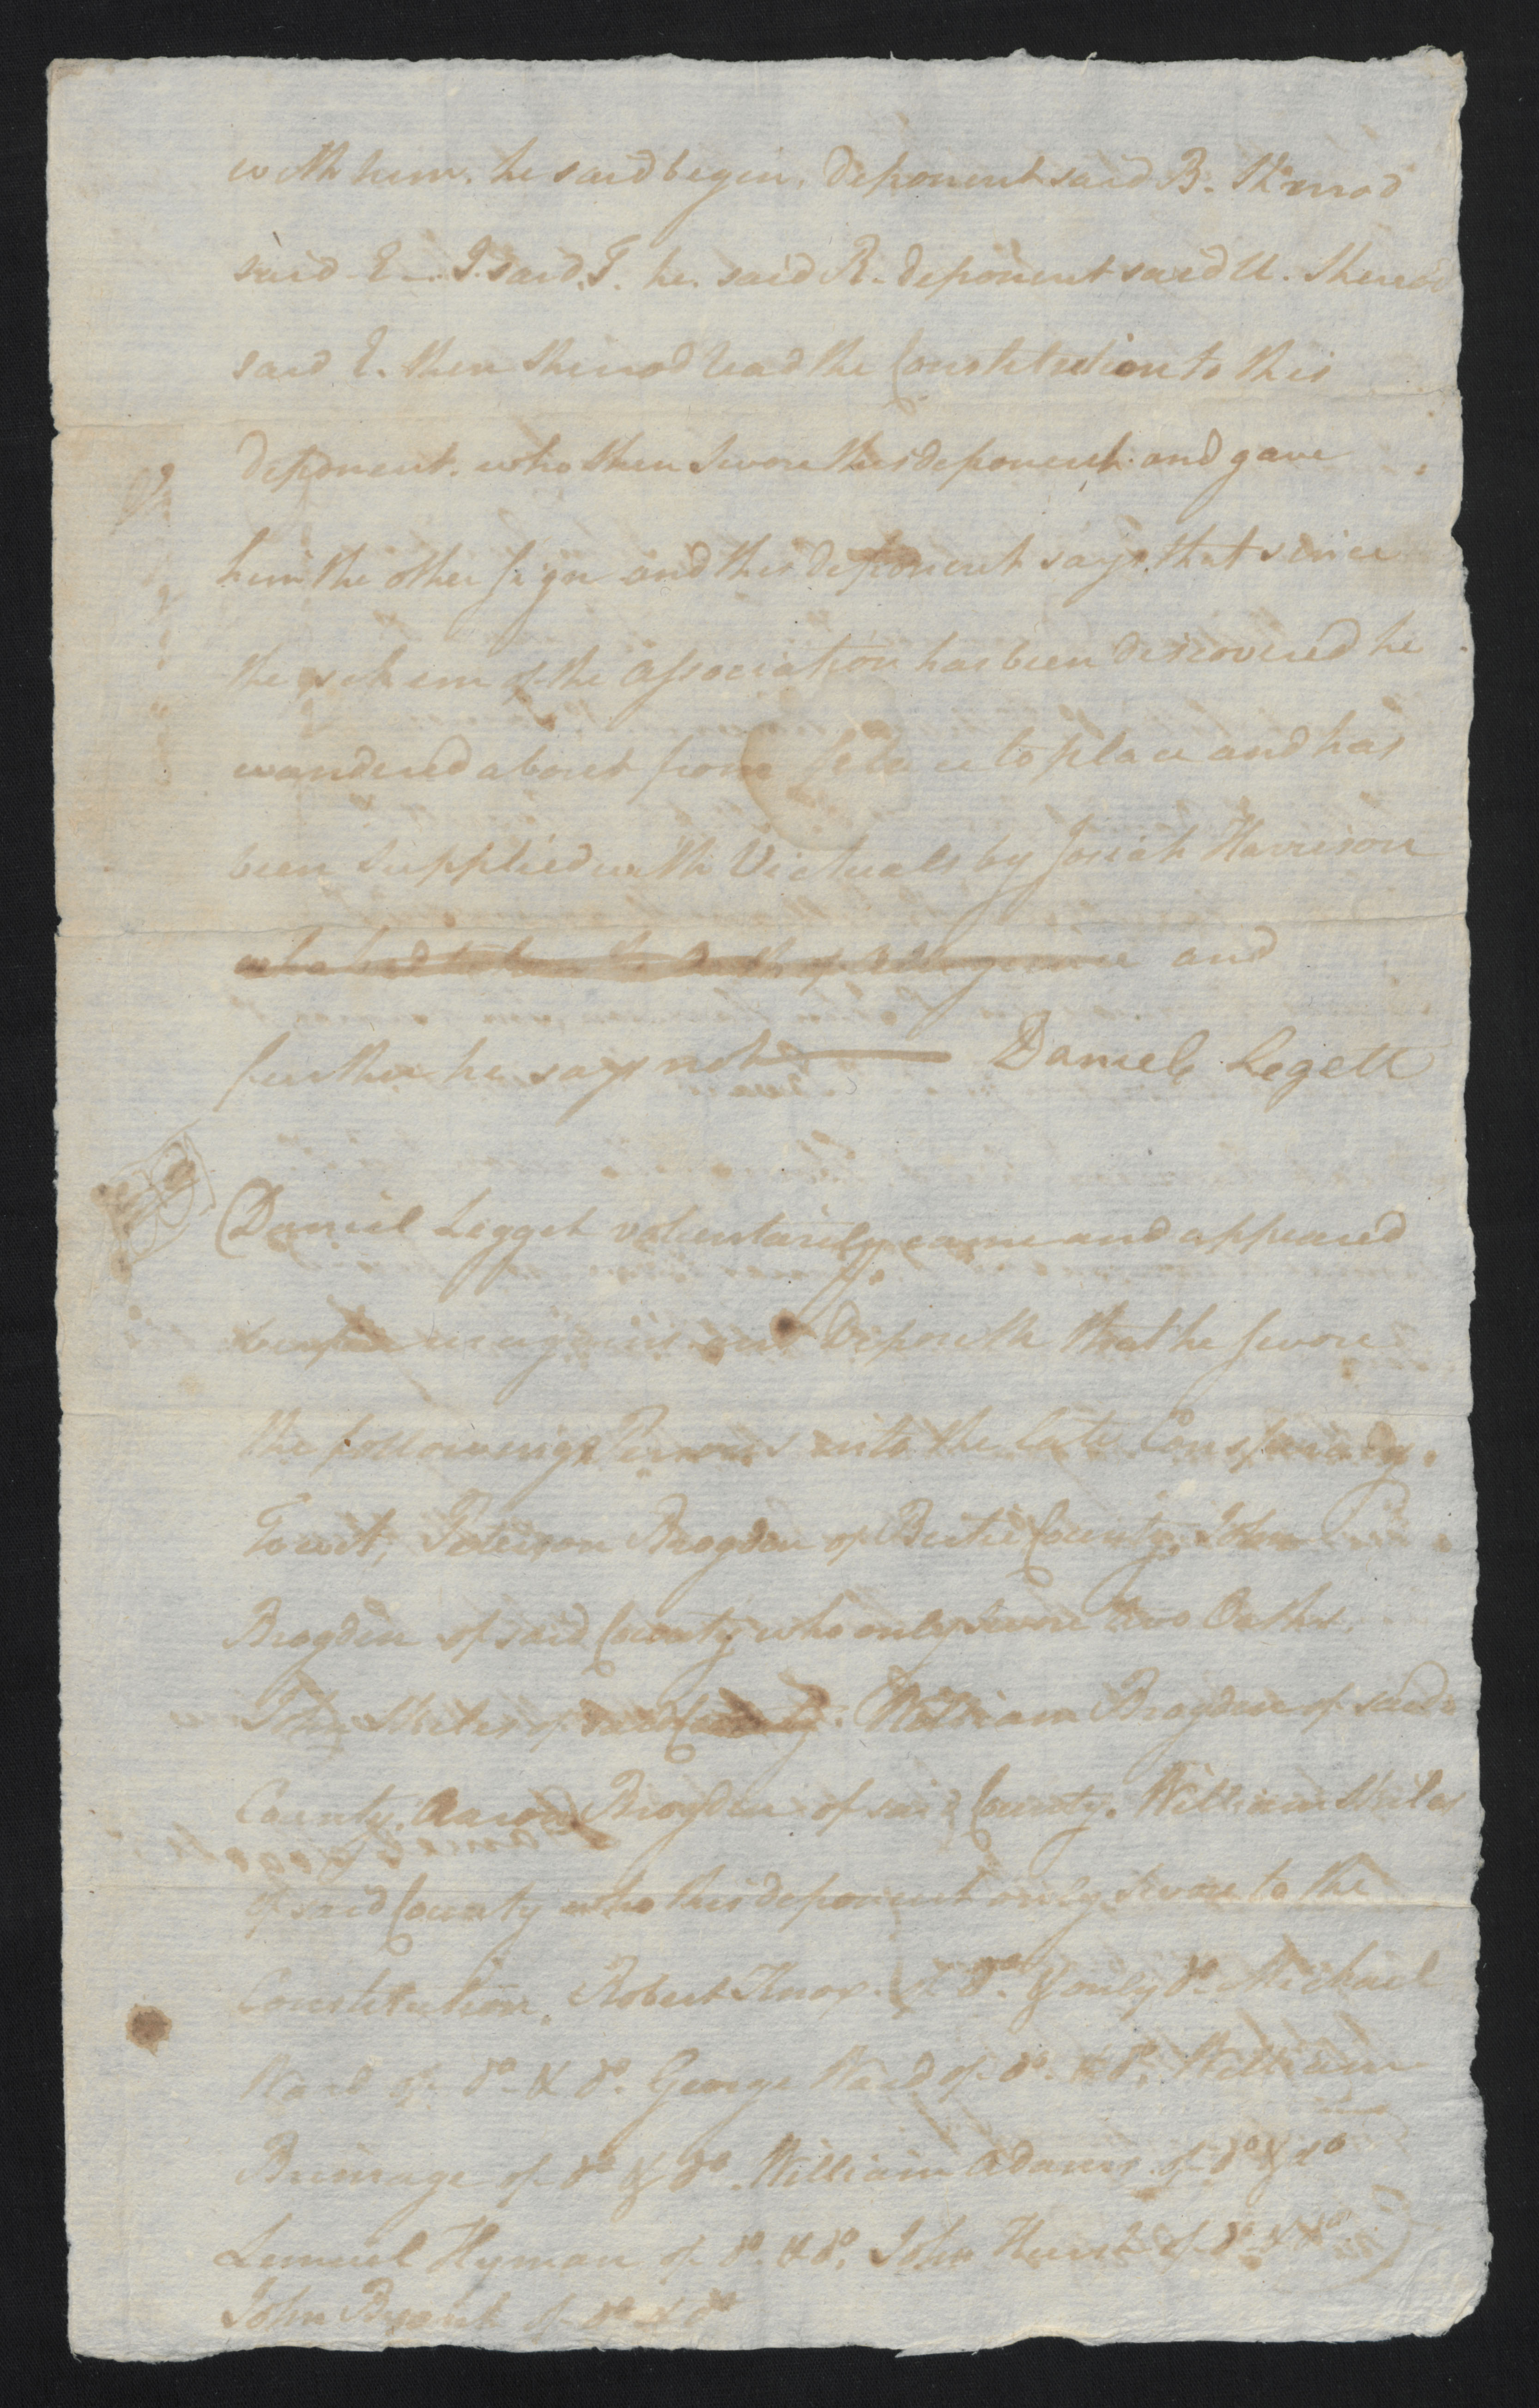 Deposition of Daniel Leggett, 13 August 1777, page 3